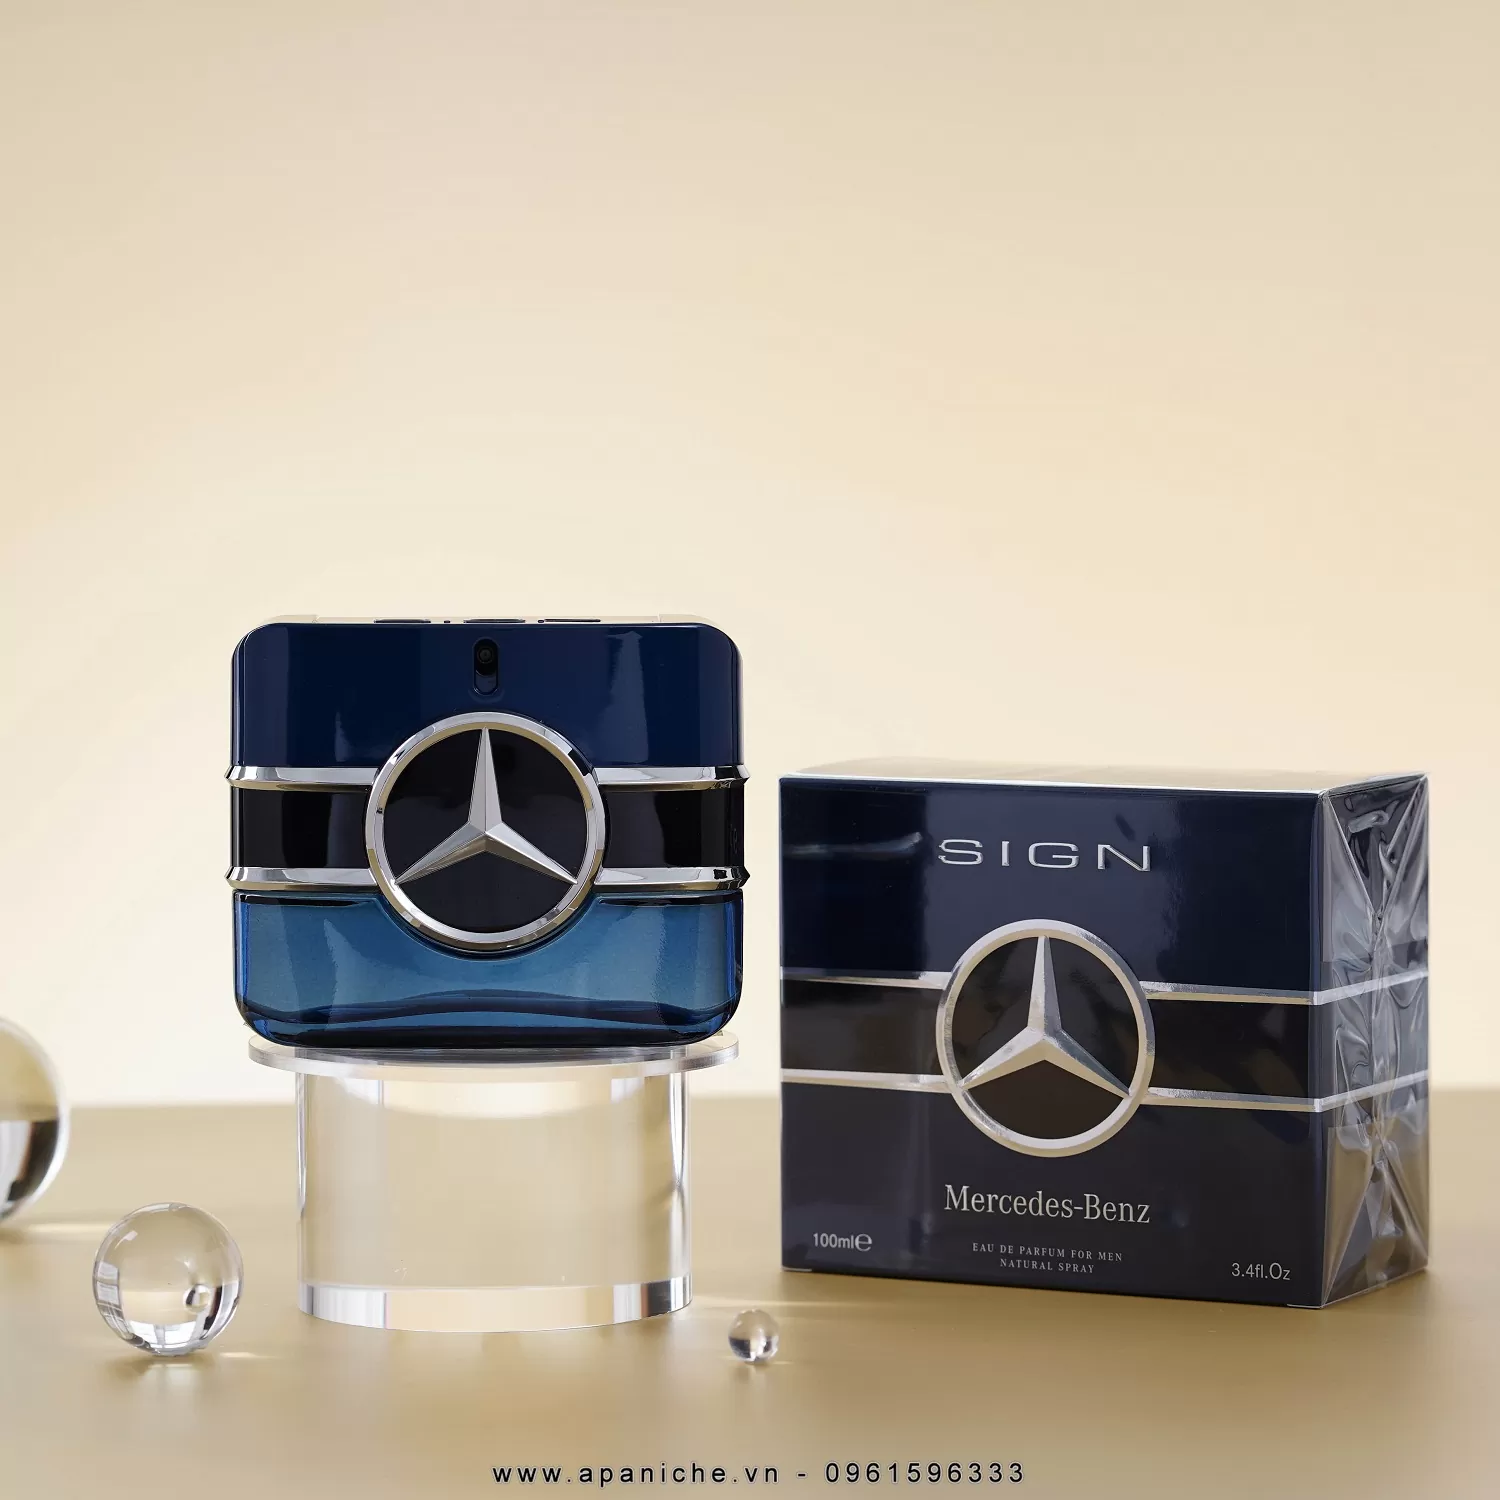 Mercedes-Benz-Sign-EDP-ha-noi